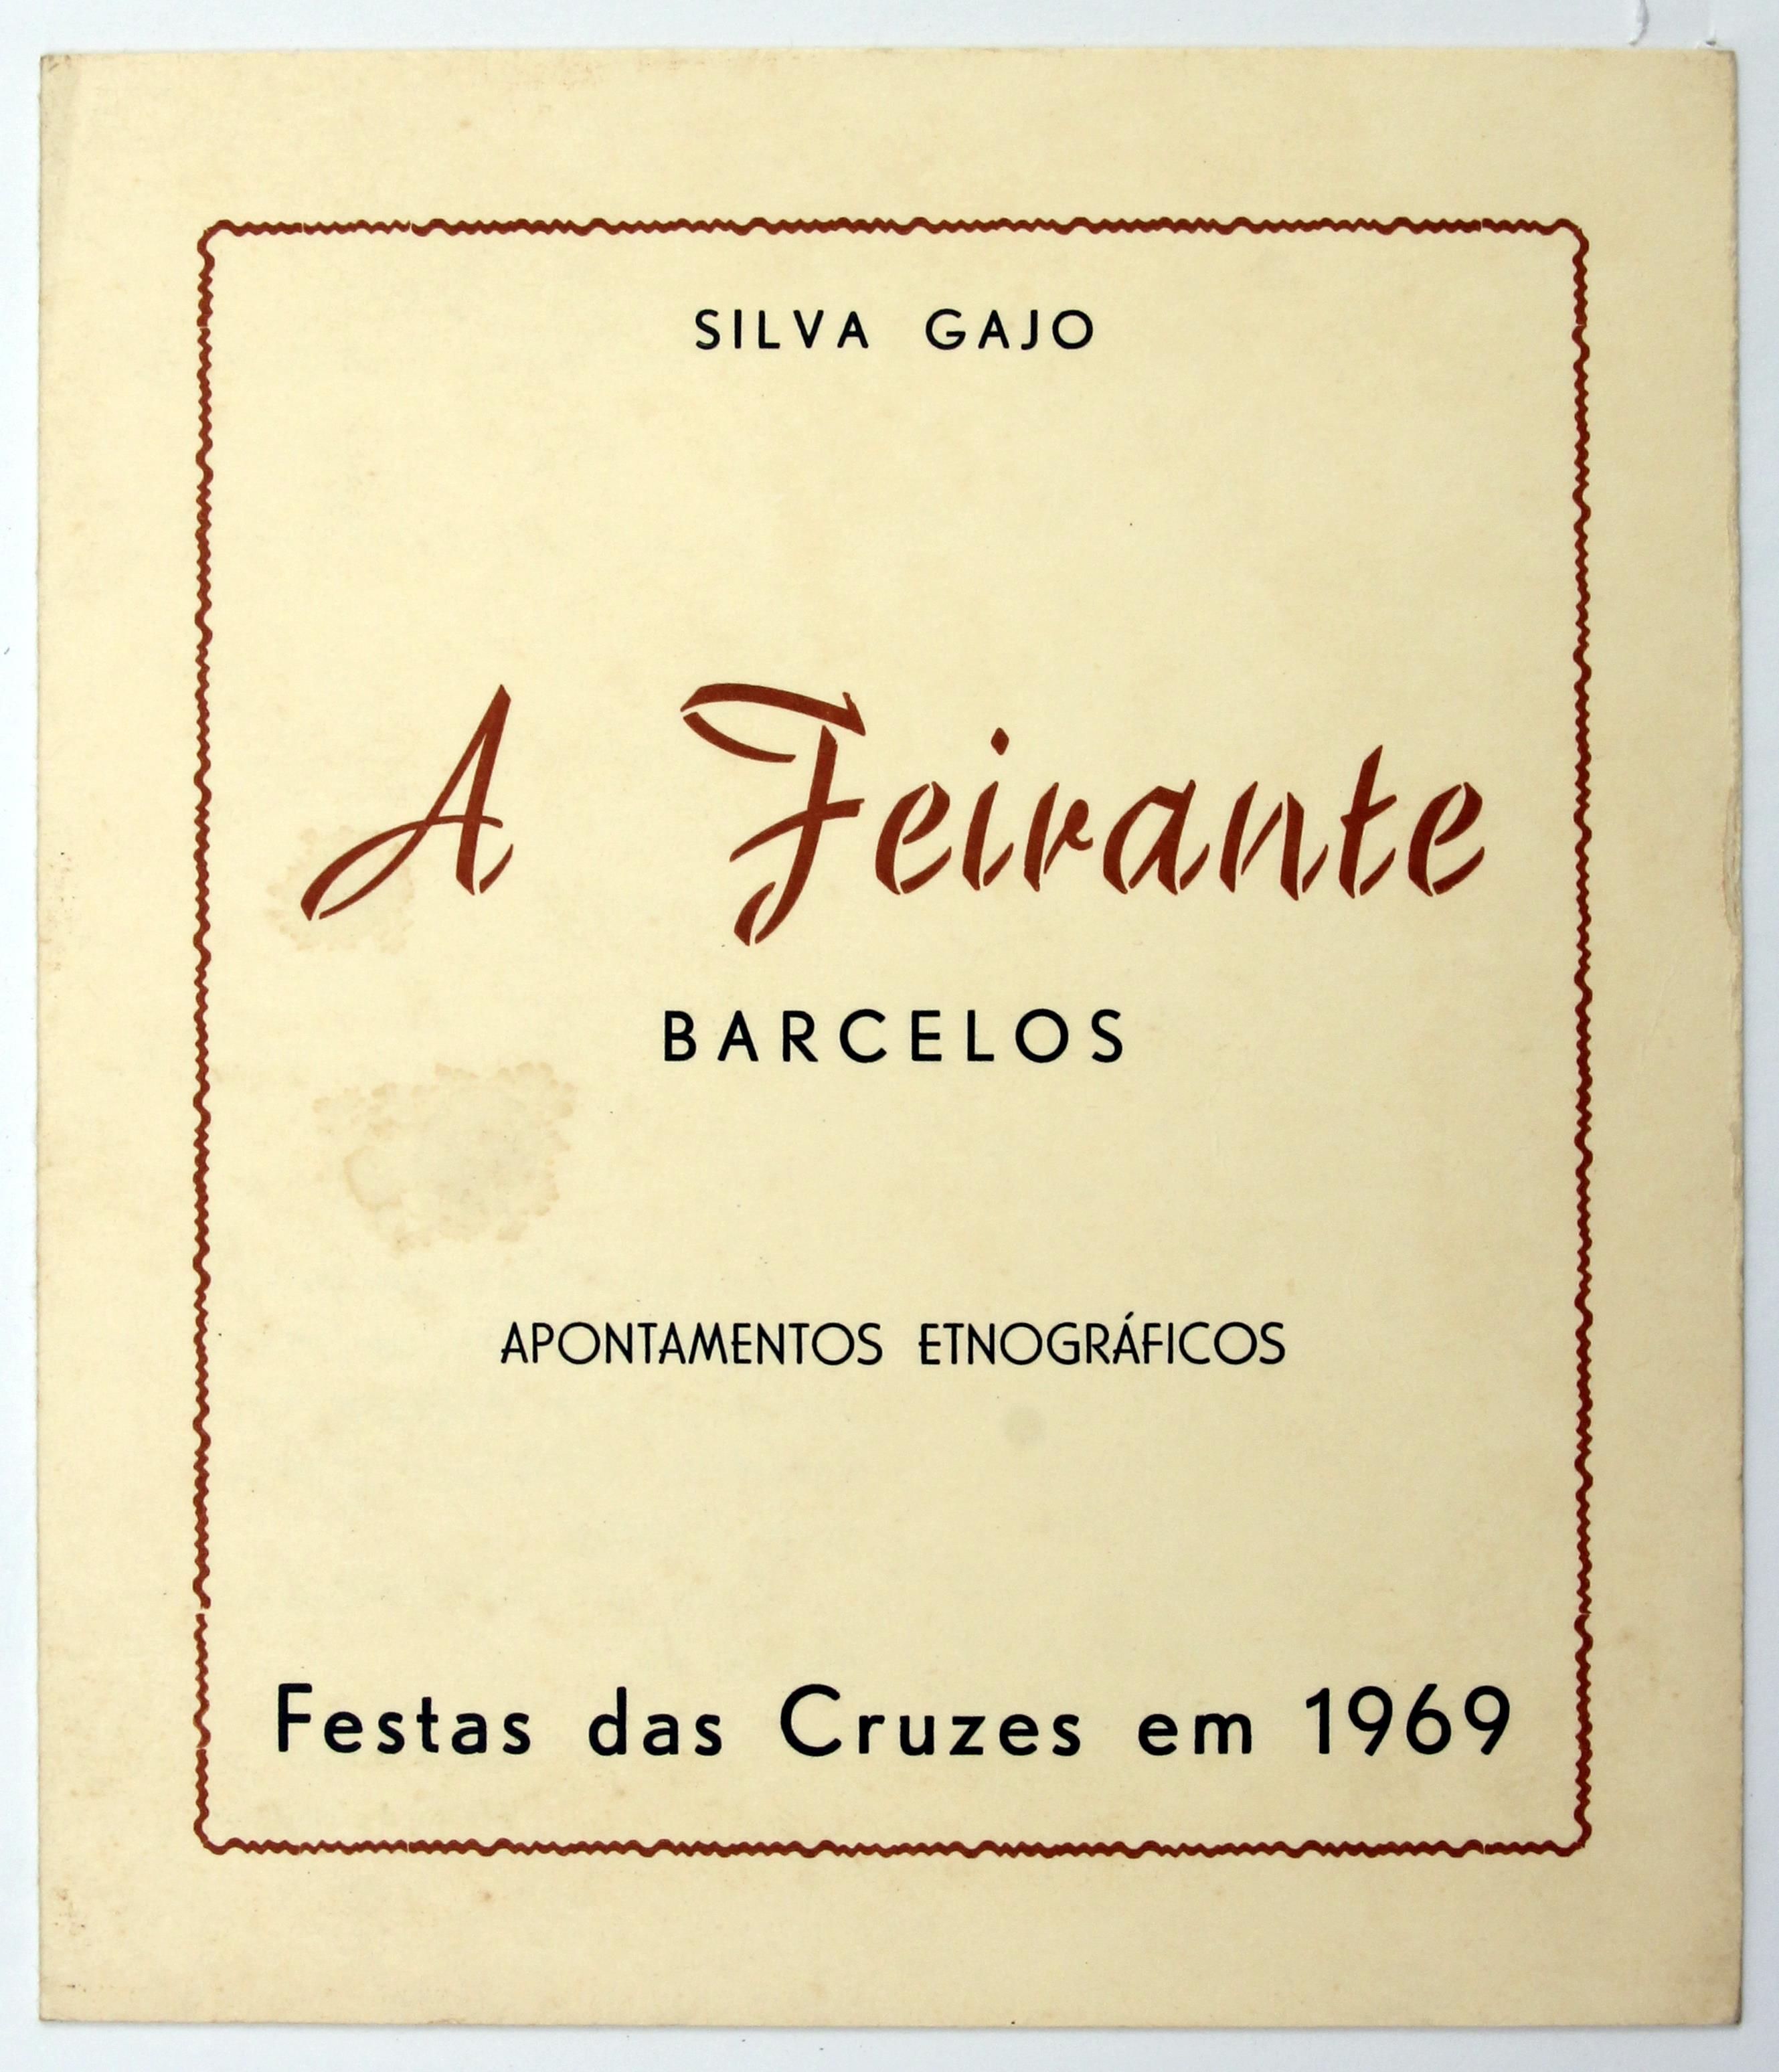 Cruz Caldas e Silva Gajo : A feirante : Barcelos : apontamentos etnográficos : Festa das Cruzes : 1969